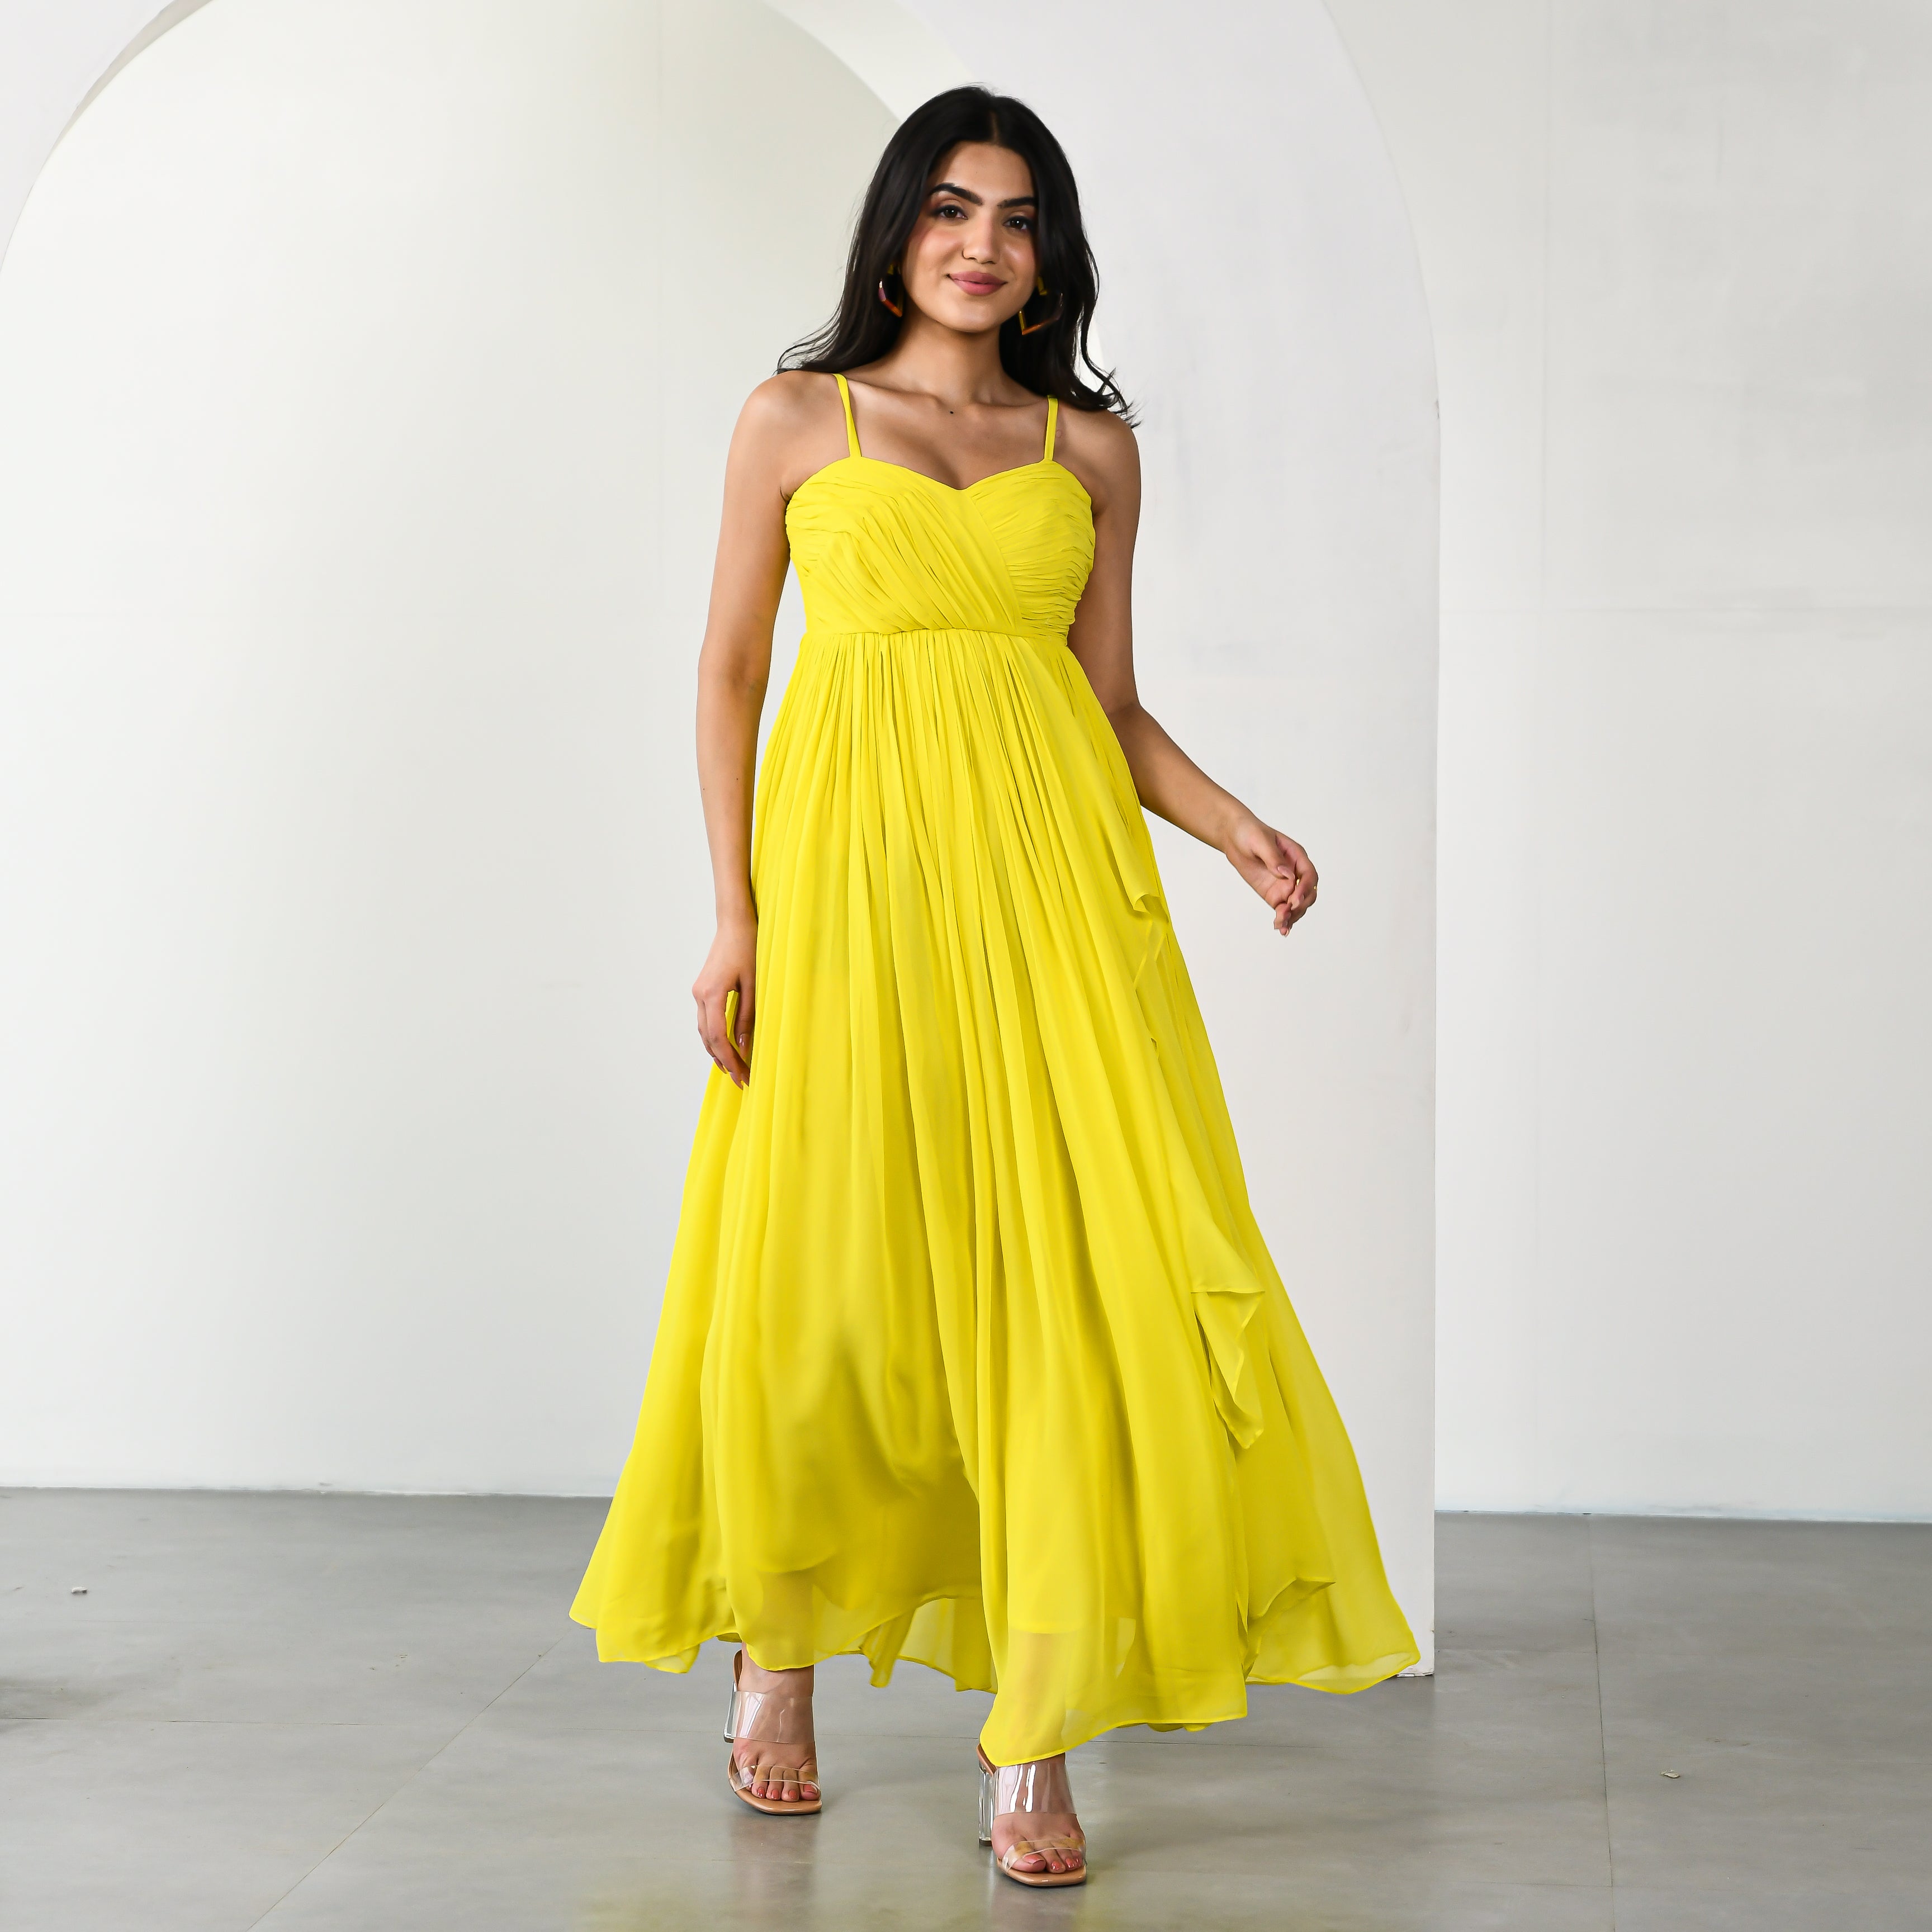 Daffodil Dream Georgette Yellow Long Dress For Women Online